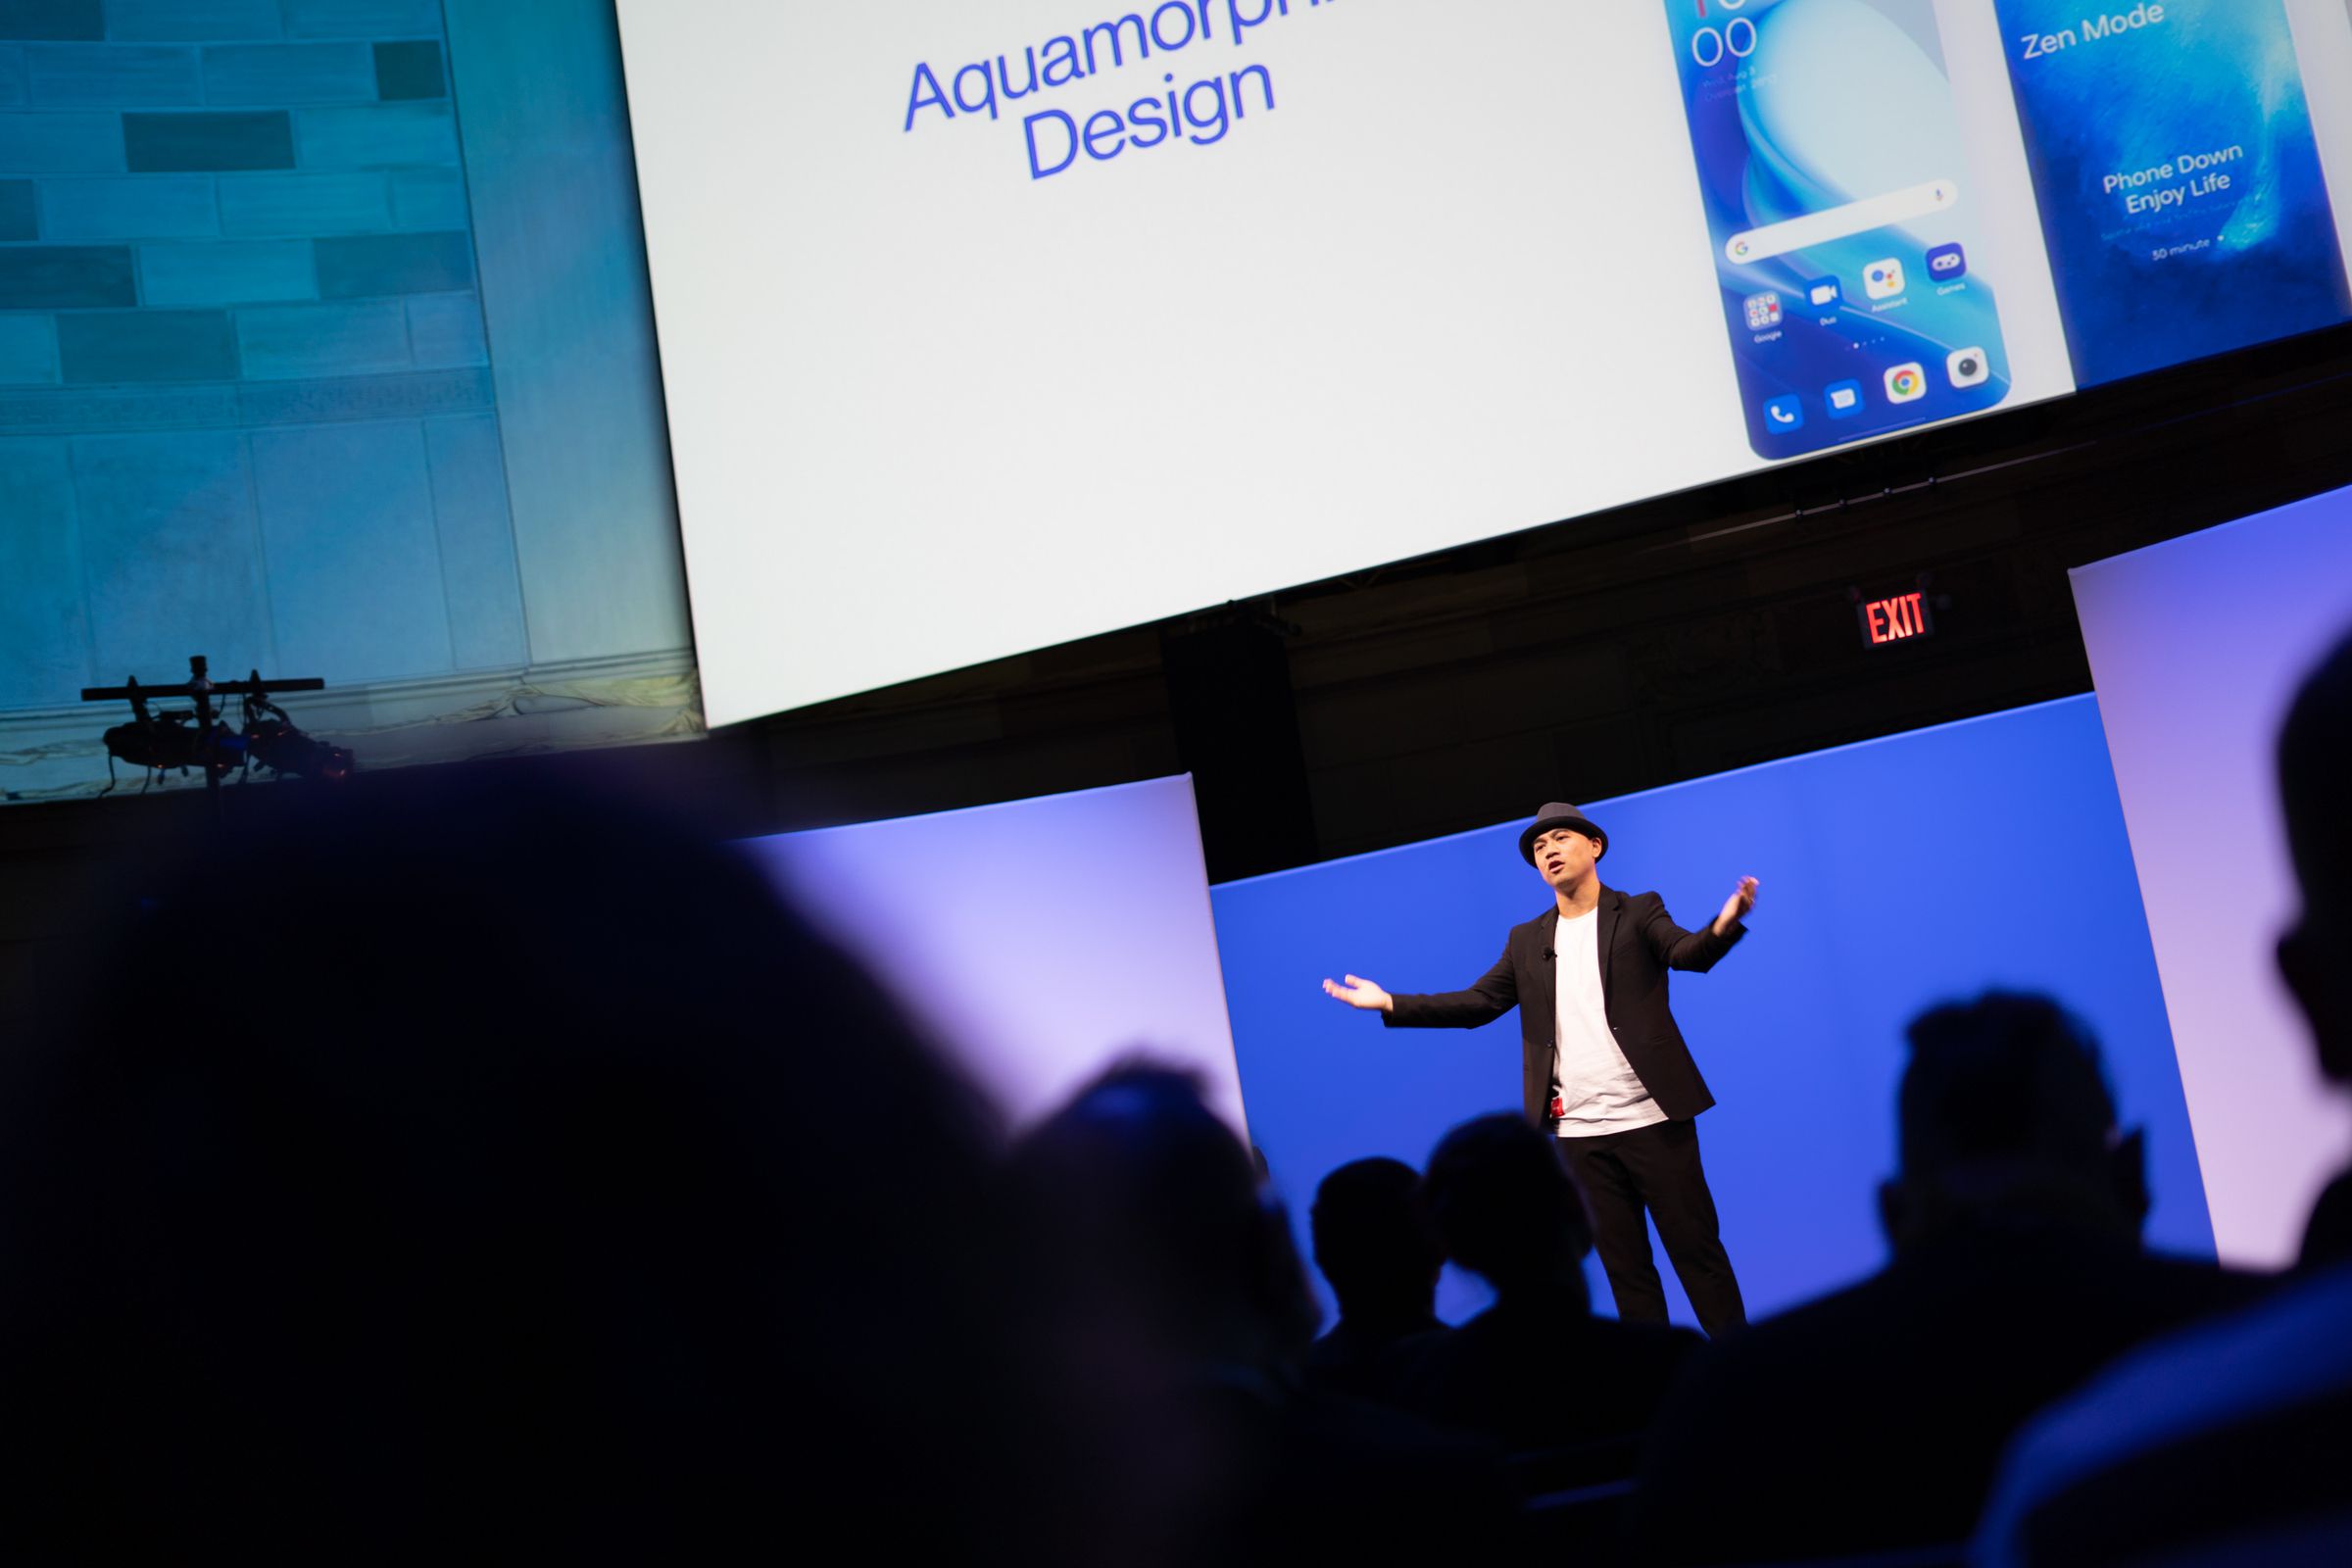 Giám đốc điều hành của OnePlus đang trình bày trên sân khấu với hình bóng khán giả ở phía trước.